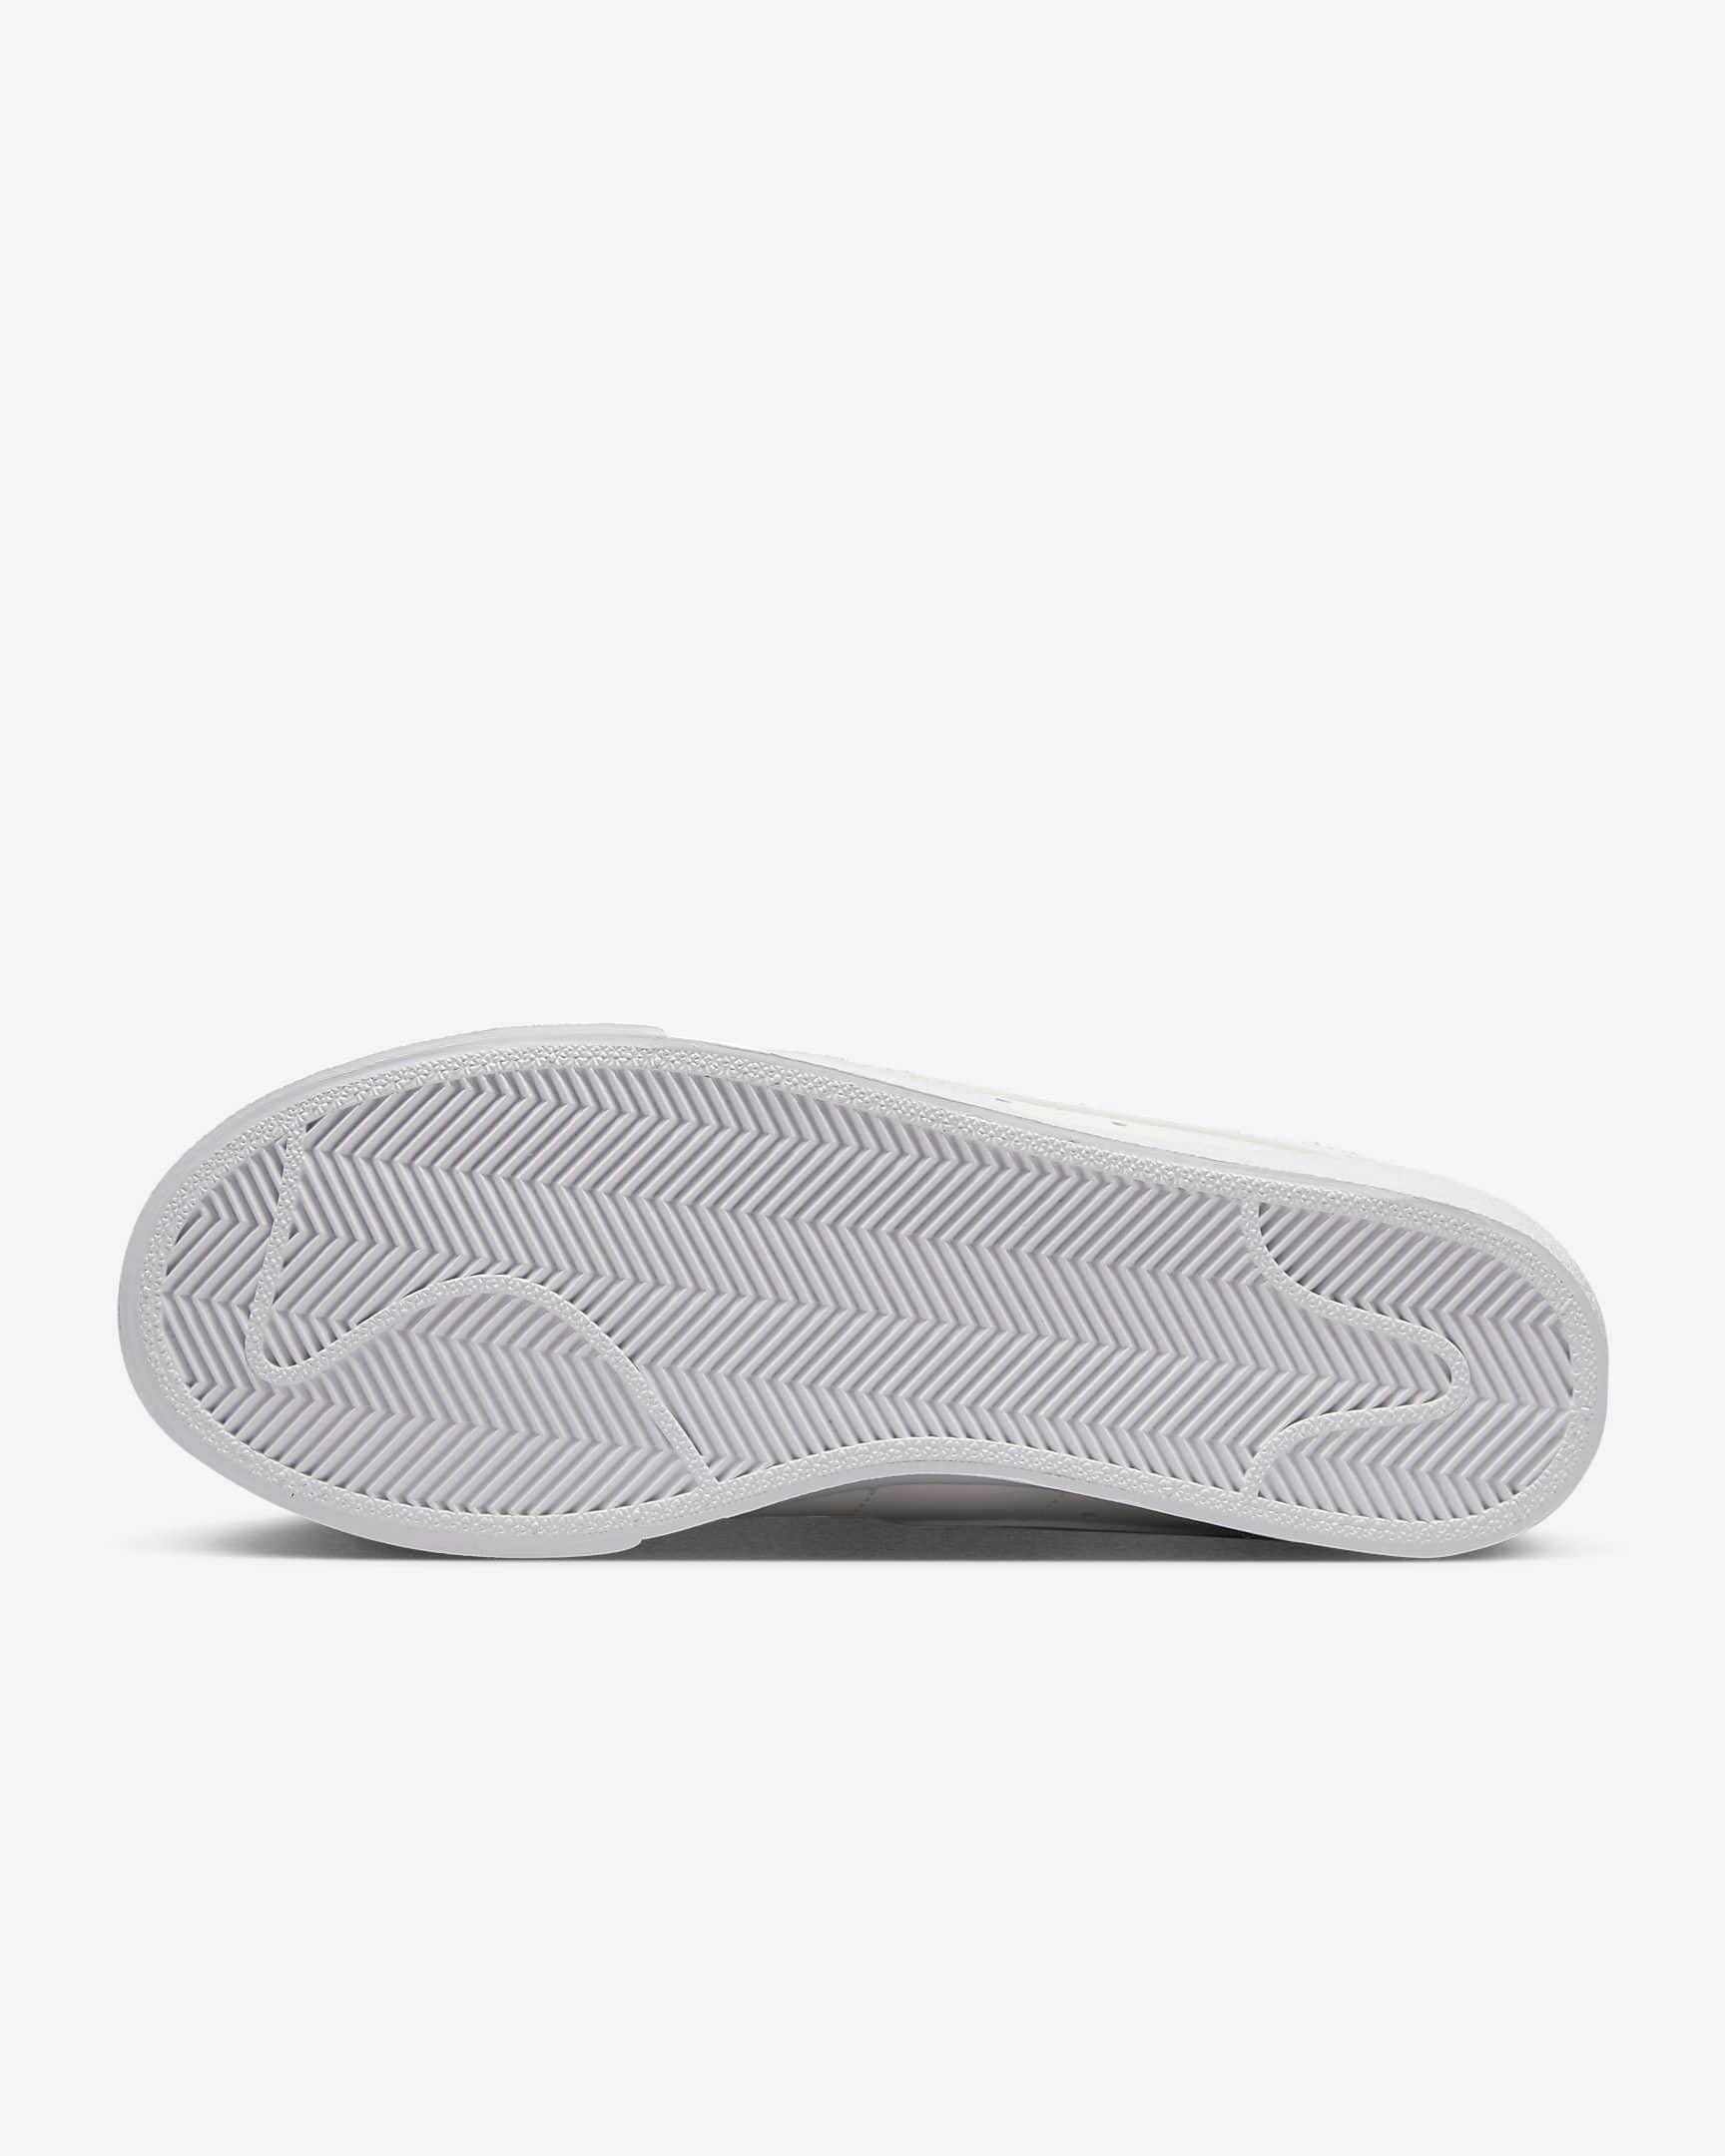 Giày Nike Blazer Low Platform Women Shoes #Sail White - Kallos Vietnam